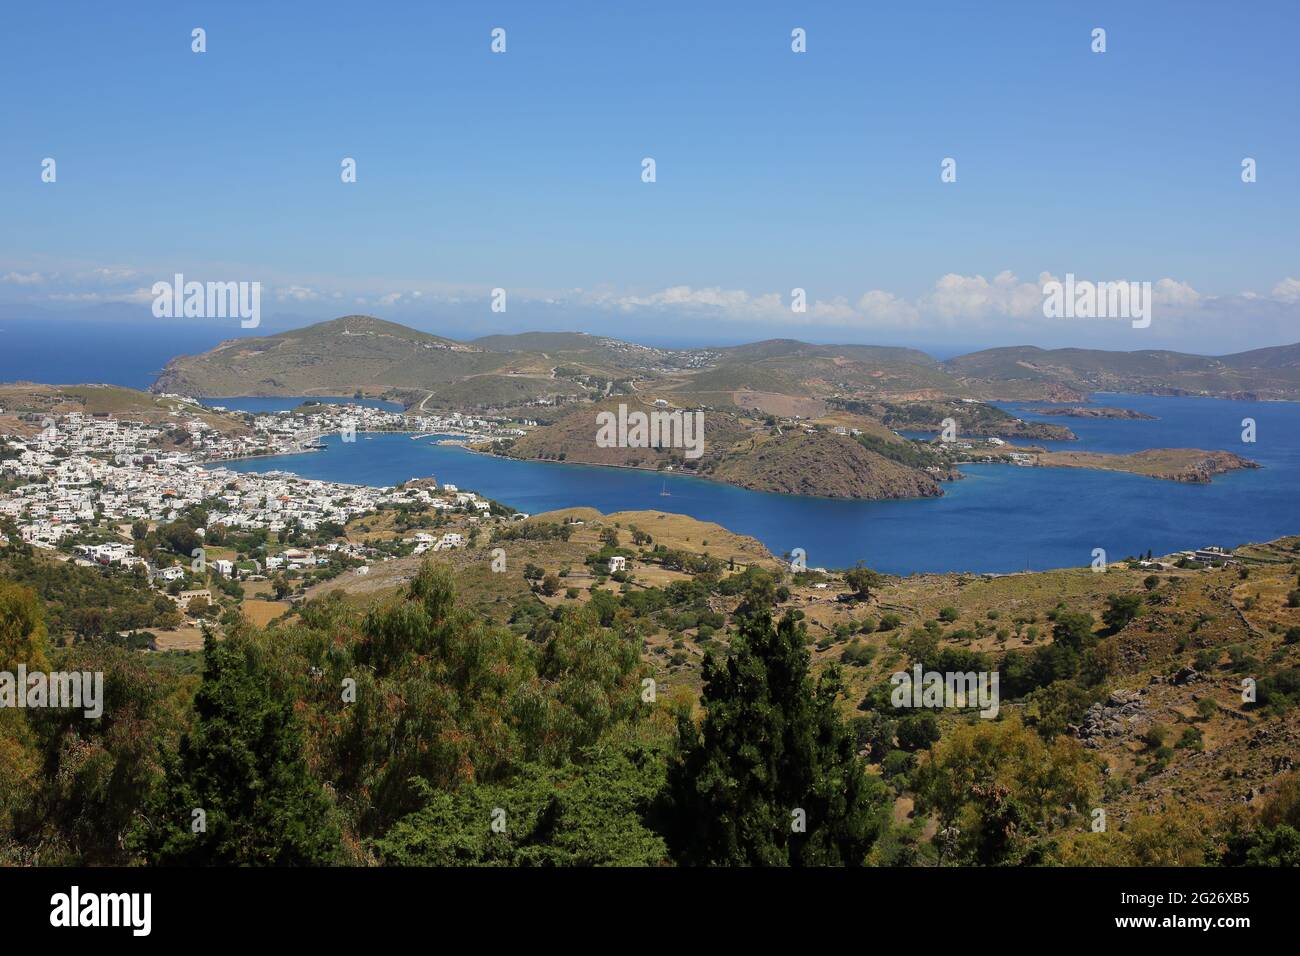 Vista aerea/paesaggistica del porto e della città di Skala, isola di Patmos, Grecia Foto Stock